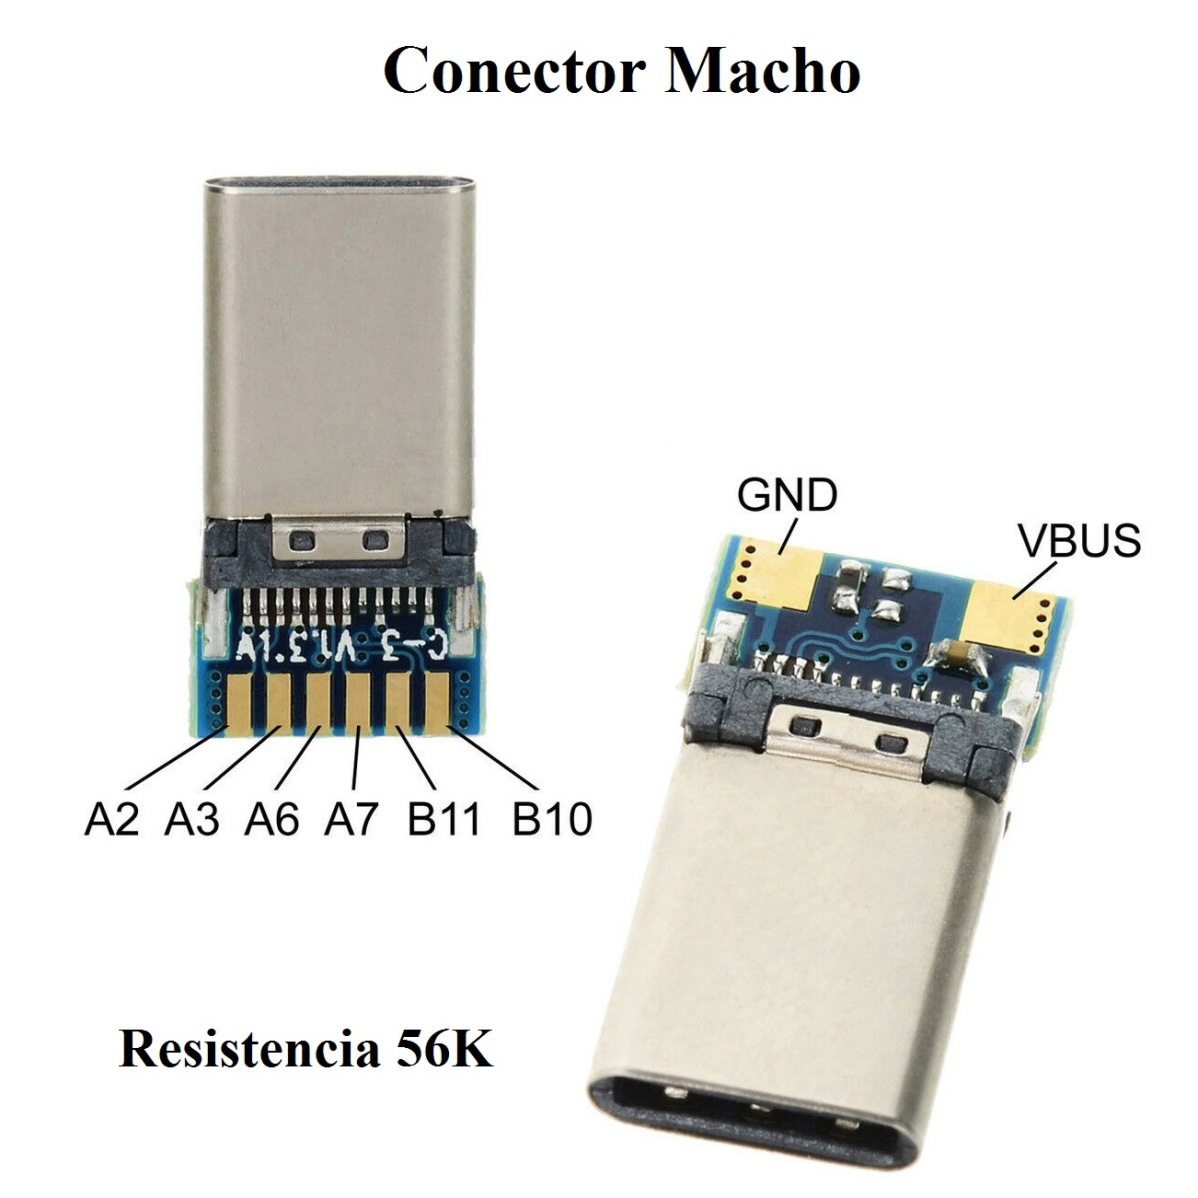 Par de Conectores USB Tipo C - 24 Pines (2 Piezas) - SANDOROBOTICS